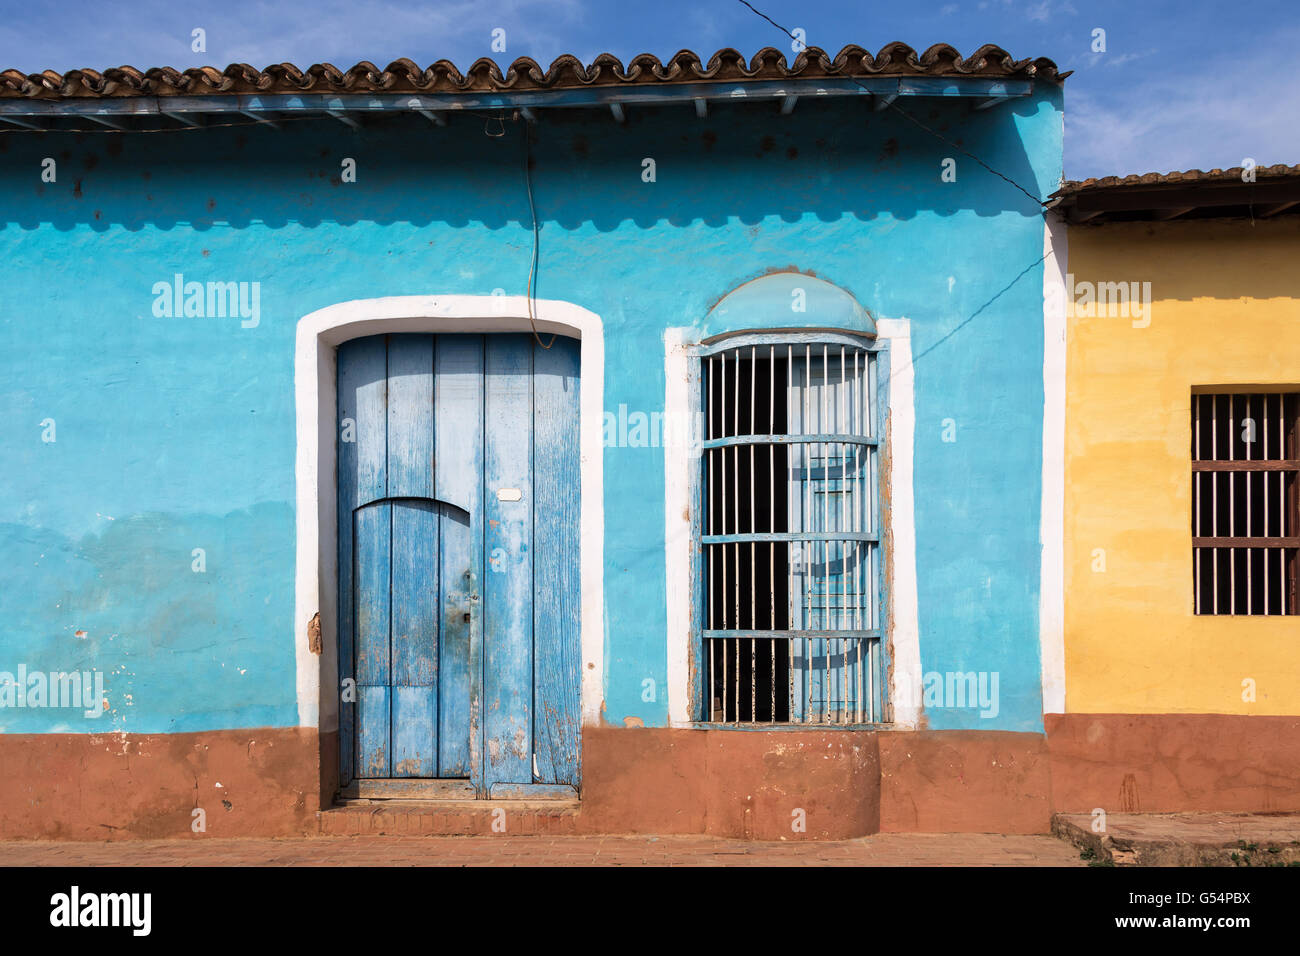 Colorful house facade in a street of Trinidad, Cuba Stock Photo